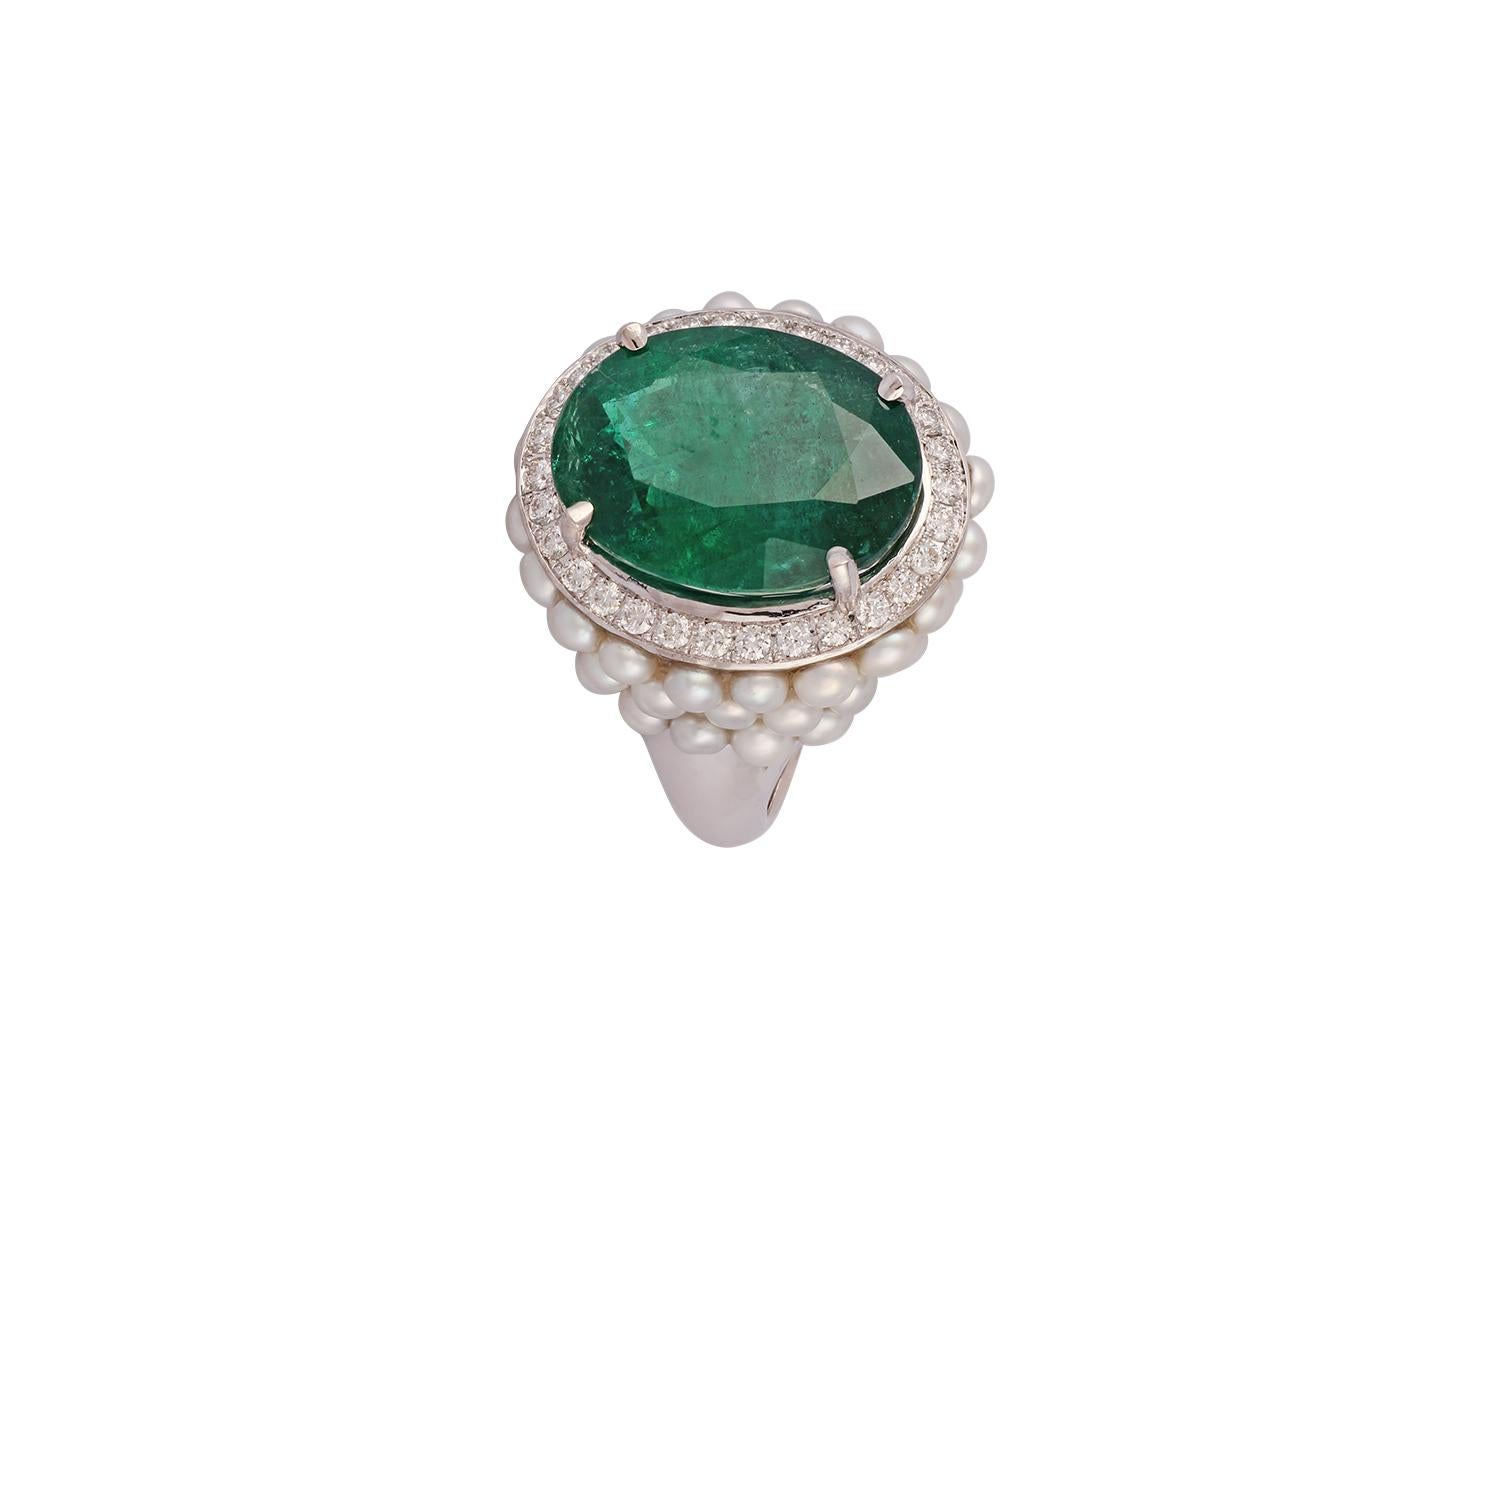 Dies ist eine elegante Smaragd, Perlen & Diamant-Ring in 18k Weißgold mit 1 Stück Oval Cut besetzt  geformter sambischer Smaragd von 10,77 Karat, umgeben von 50 Perlen von 4,53 Karat und runden Diamanten von 0,44 Karat. Der gesamte Ring ist in 18